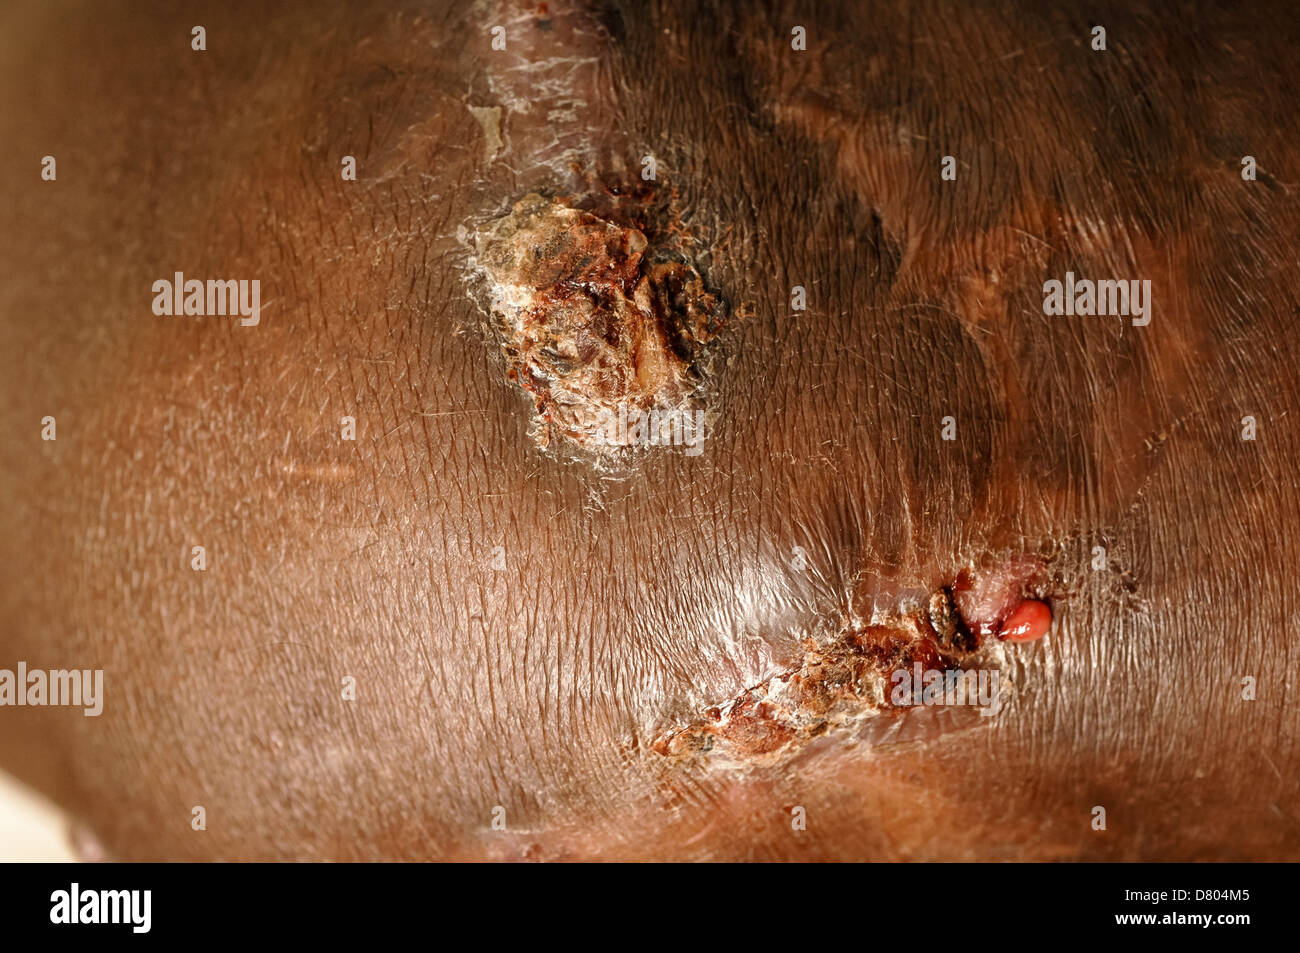 Myzetom auf das rechte Knie eines Patienten. Stockfoto